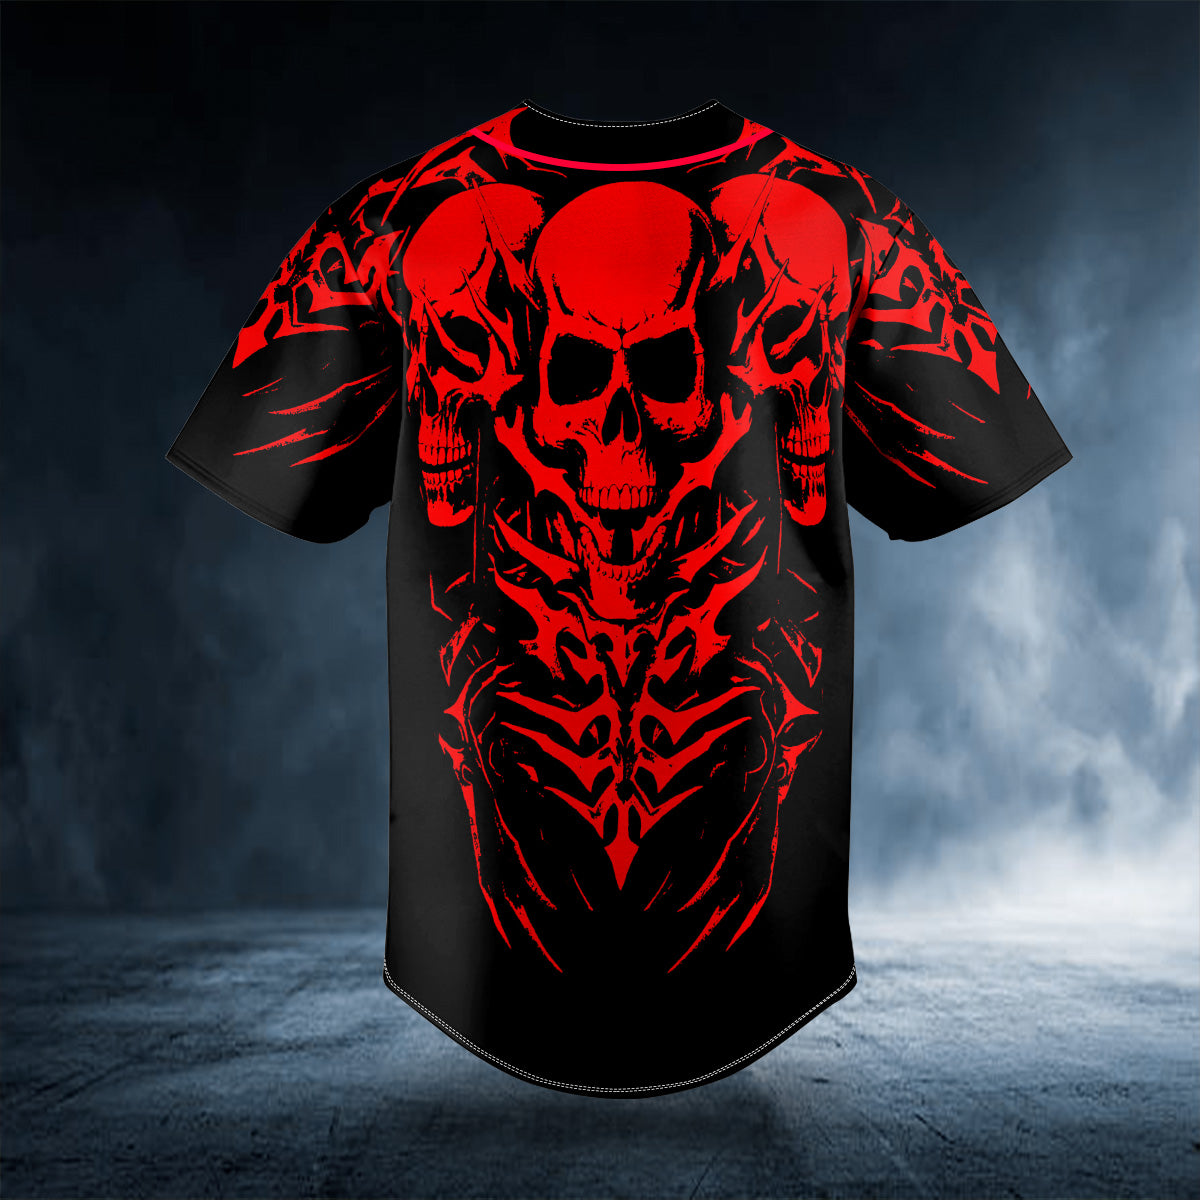 Red 3 Heads Skeletons Skull Custom Baseball Jersey | BSJ-870